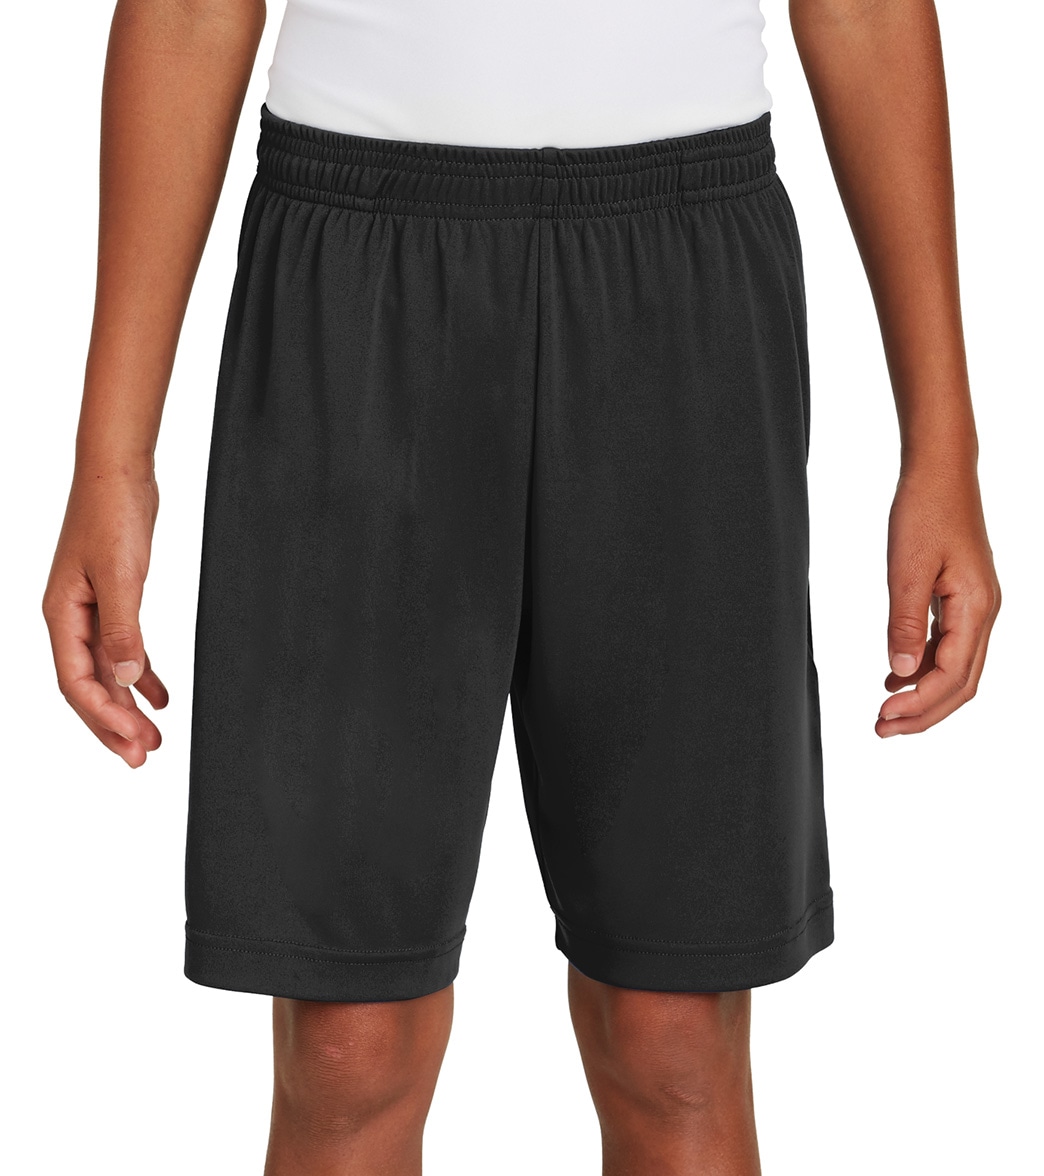 Boys' Sport-Tek Posicharge Competitortm Pocketed Short - Black Large Polyester - Swimoutlet.com